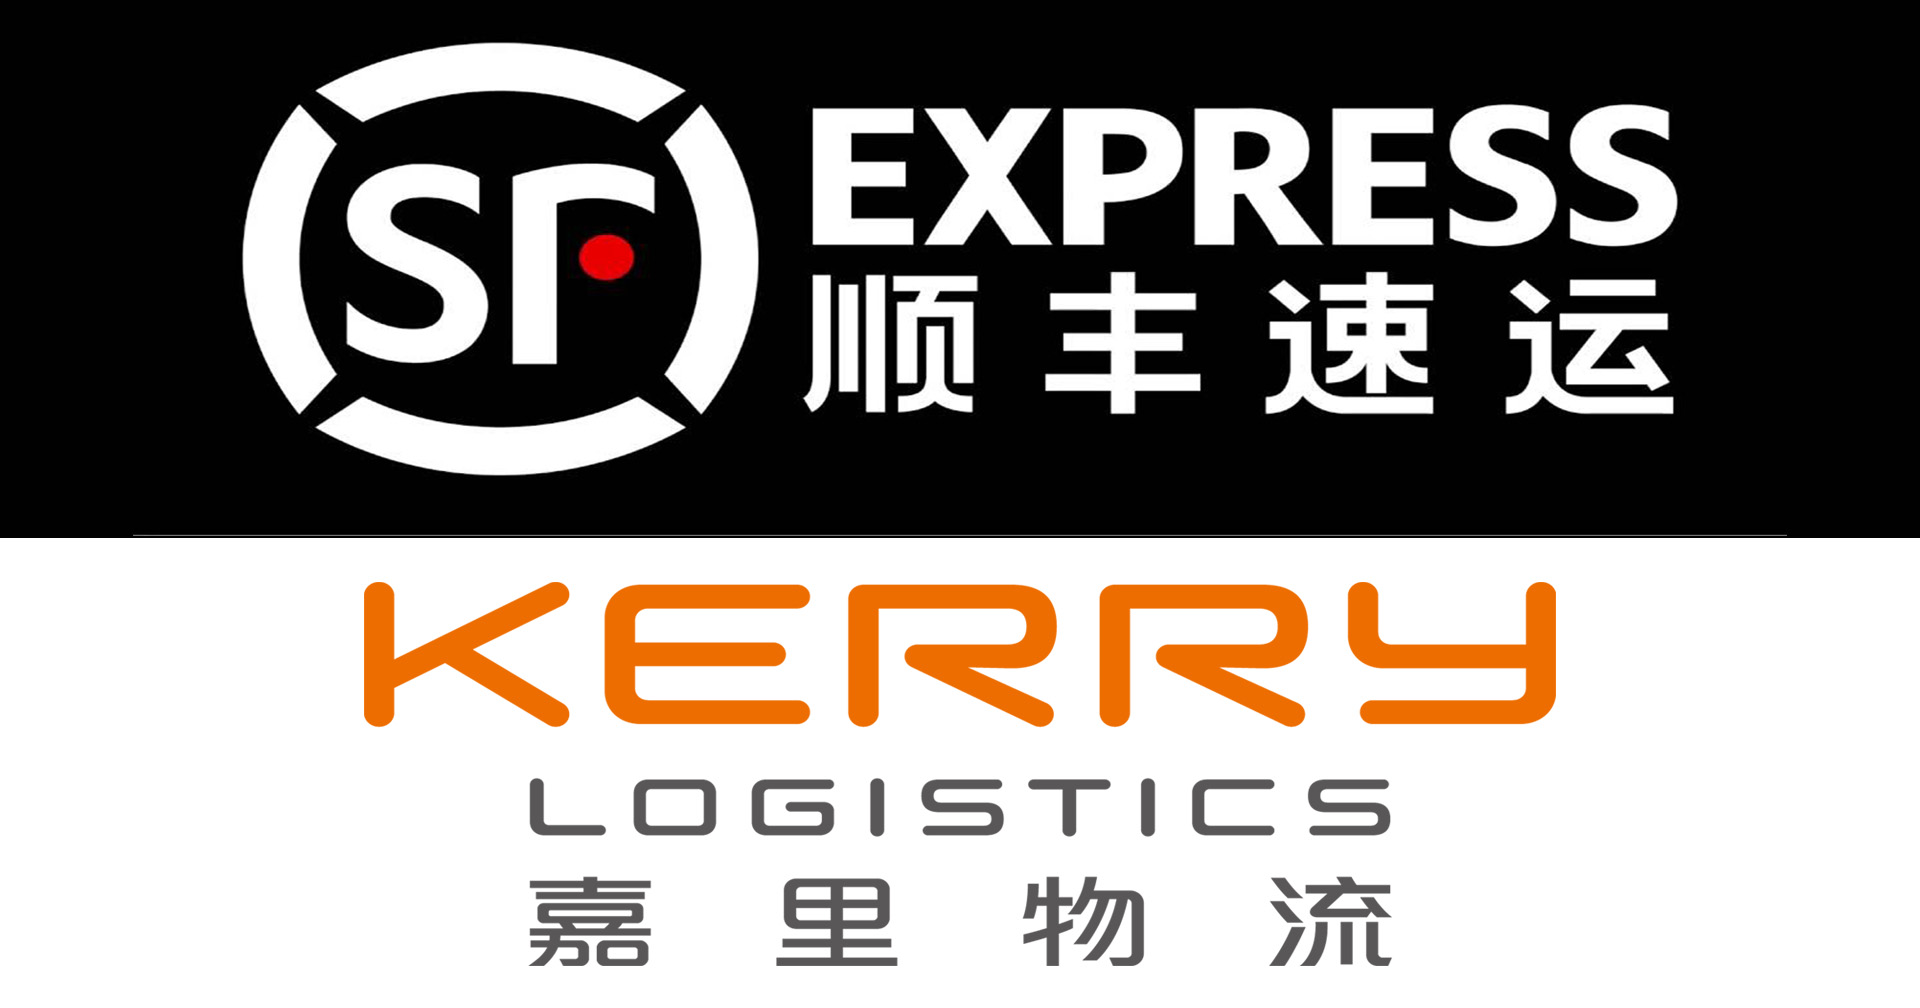 S.F. บริษัทโลจิสติกส์รายใหญ่ของจีน เสนอซื้อหุ้นกว่า 51% ของ Kerry ด้วยมูลค่าเกือบ 68,000 ล้านบาท